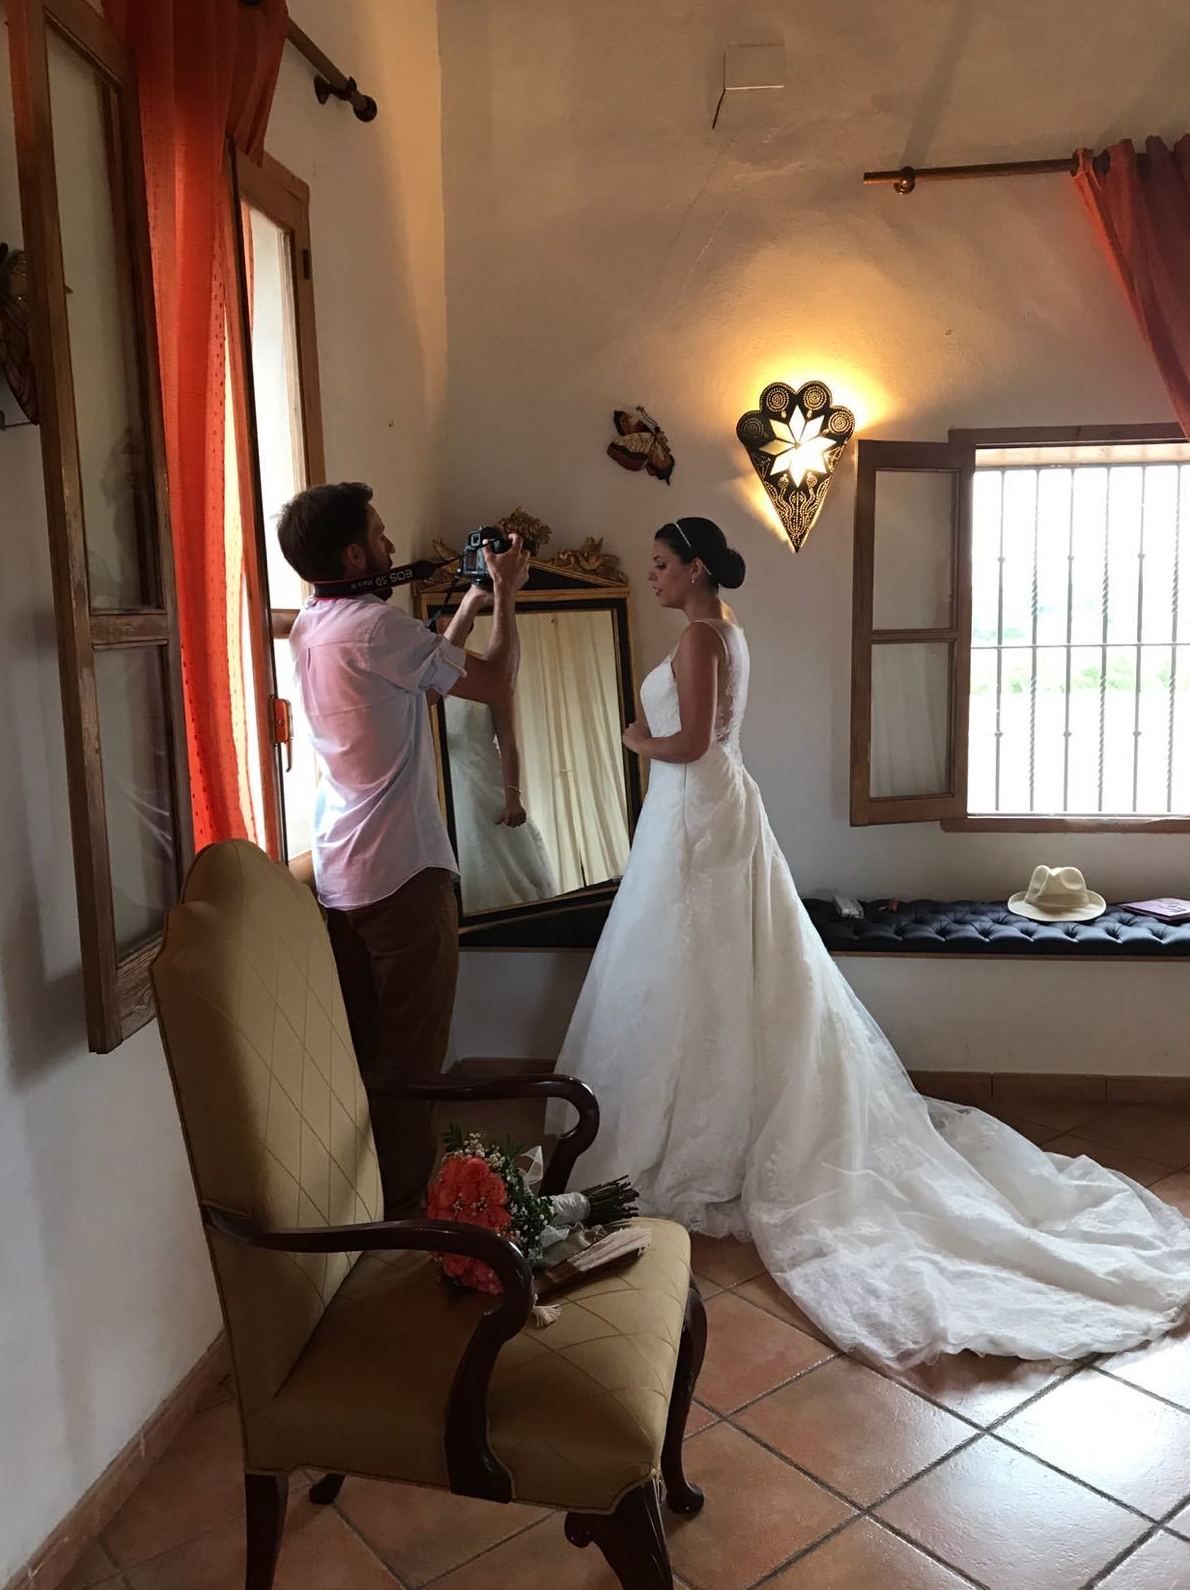 Foto 37 de Celebraciones de boda en  | Masía San Agustín